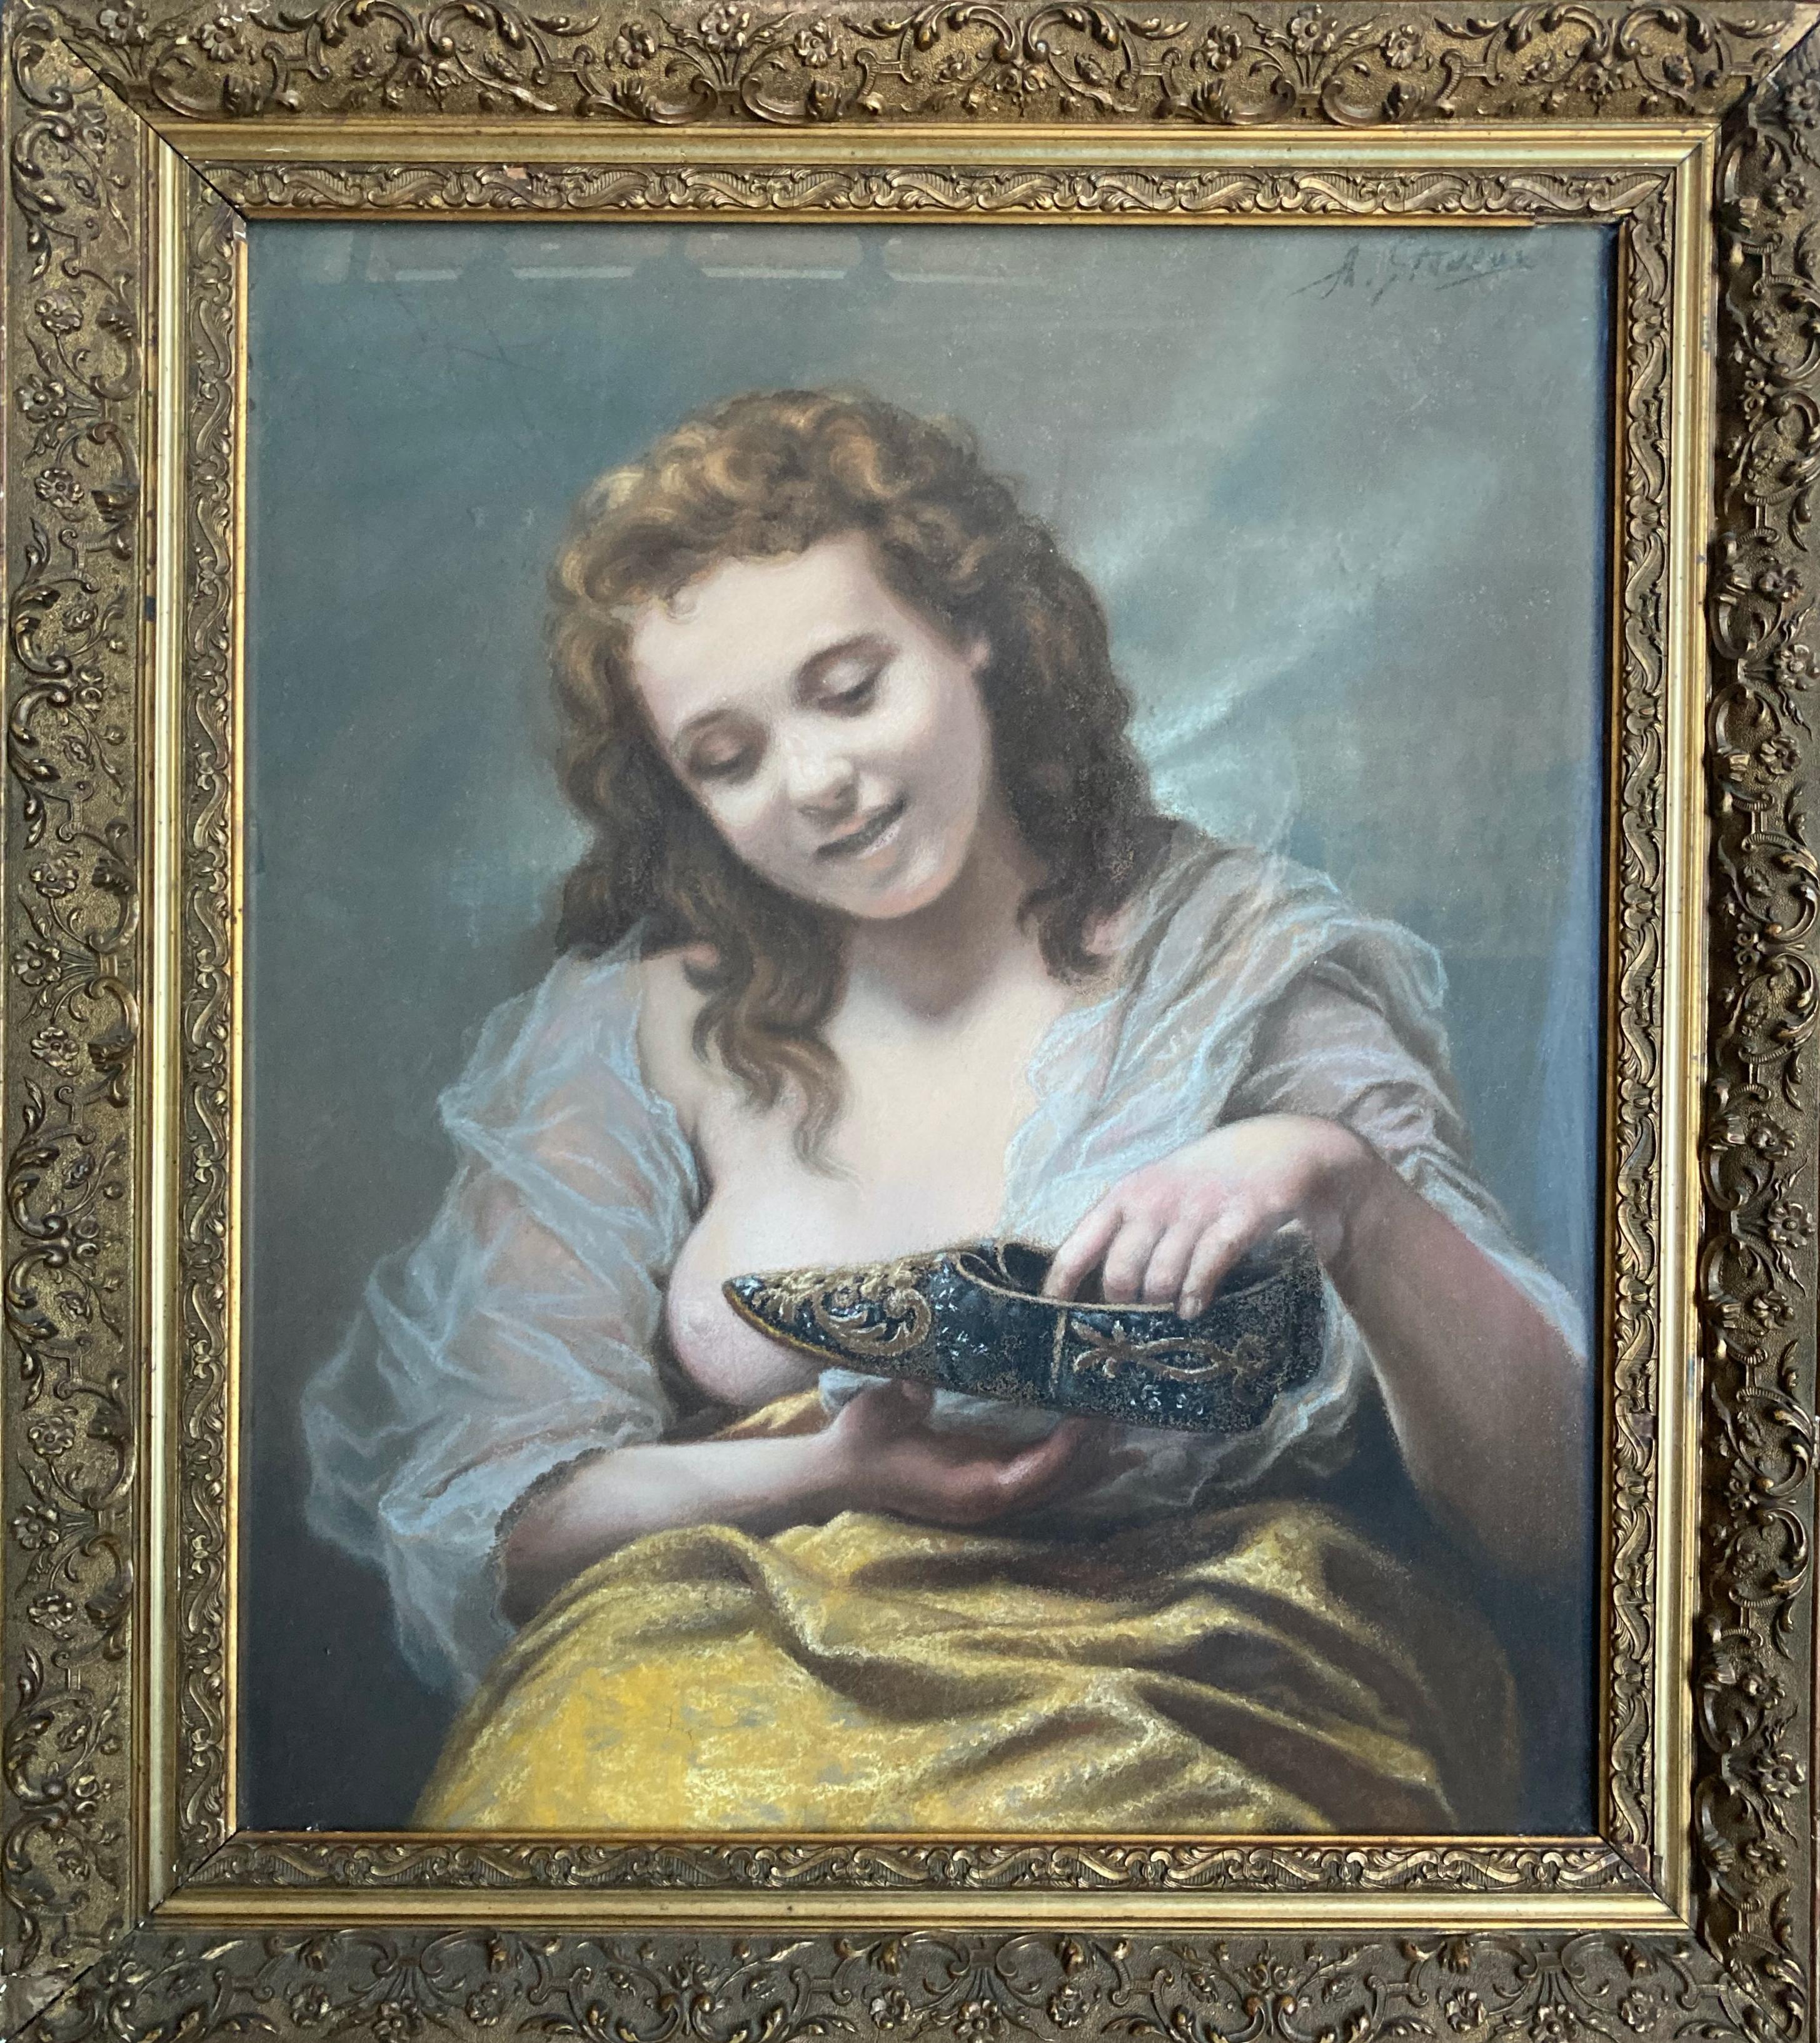 Nude A. Stiveux - « Jeune femme avec des chaussures en soie » - Peinture de portrait ancien encadrée du 19ème siècle